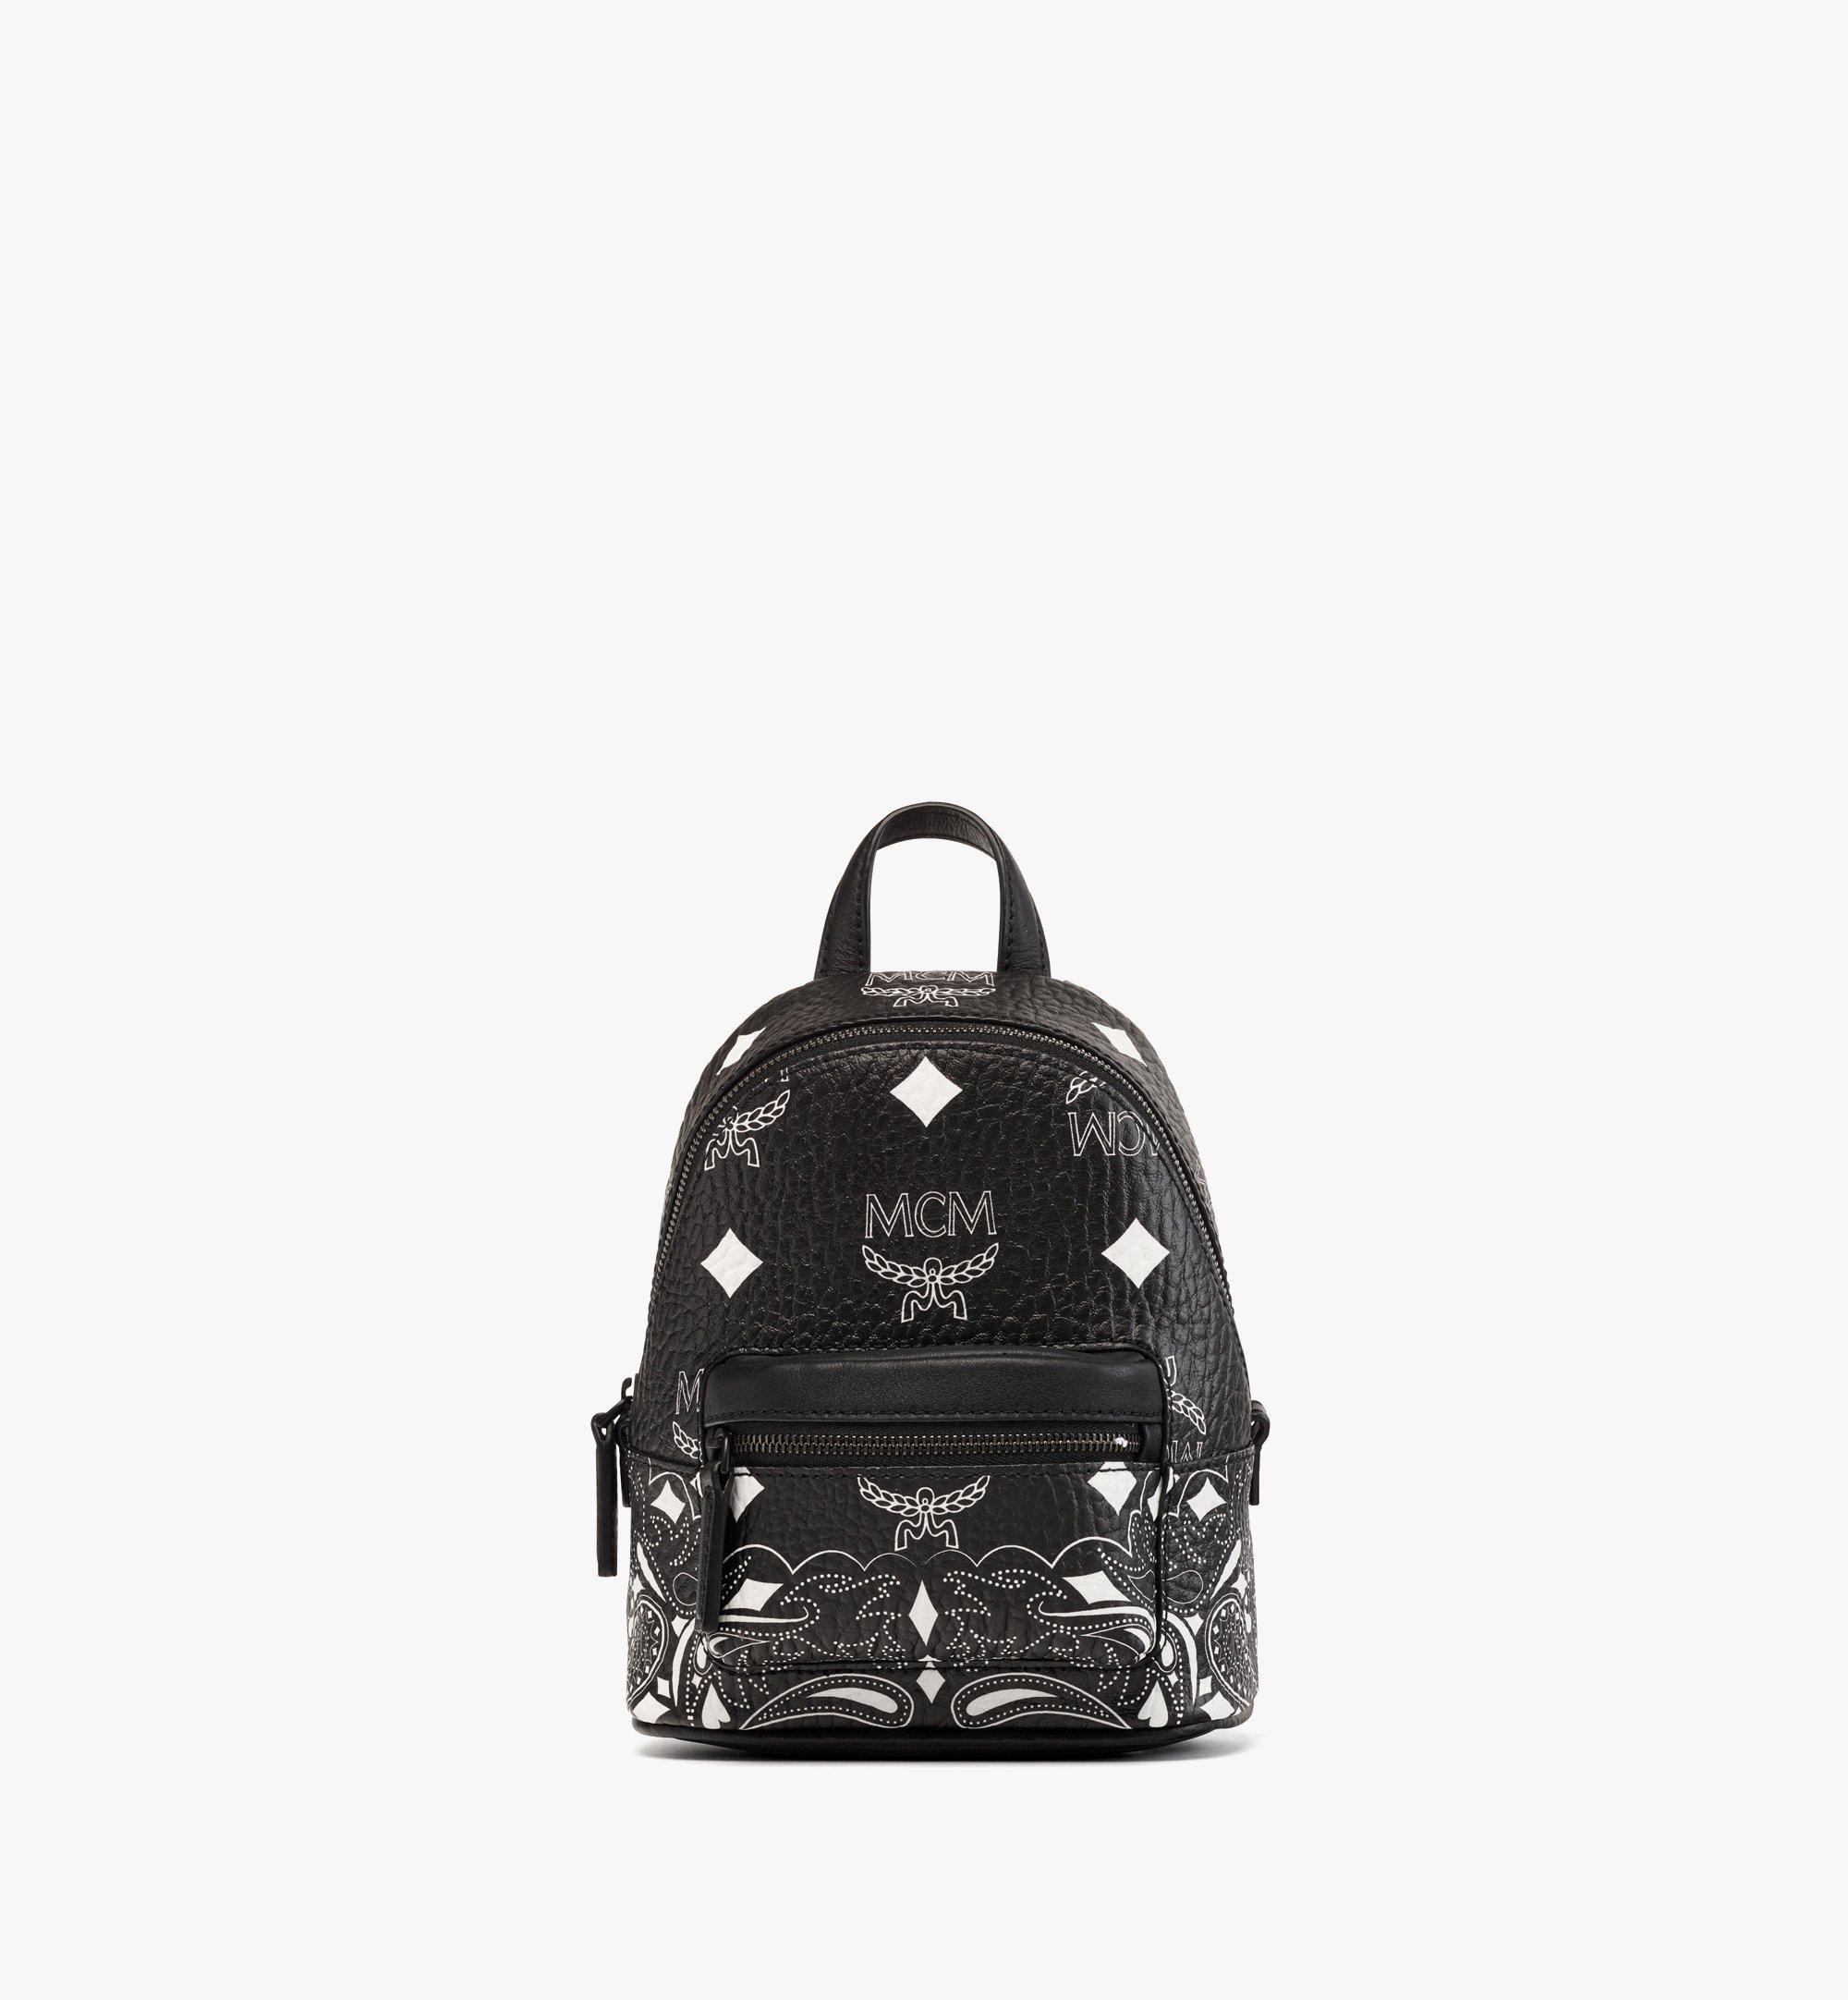 Mcm Men's Stark Backpack in Meta Safari Visetos - Black - Backpacks